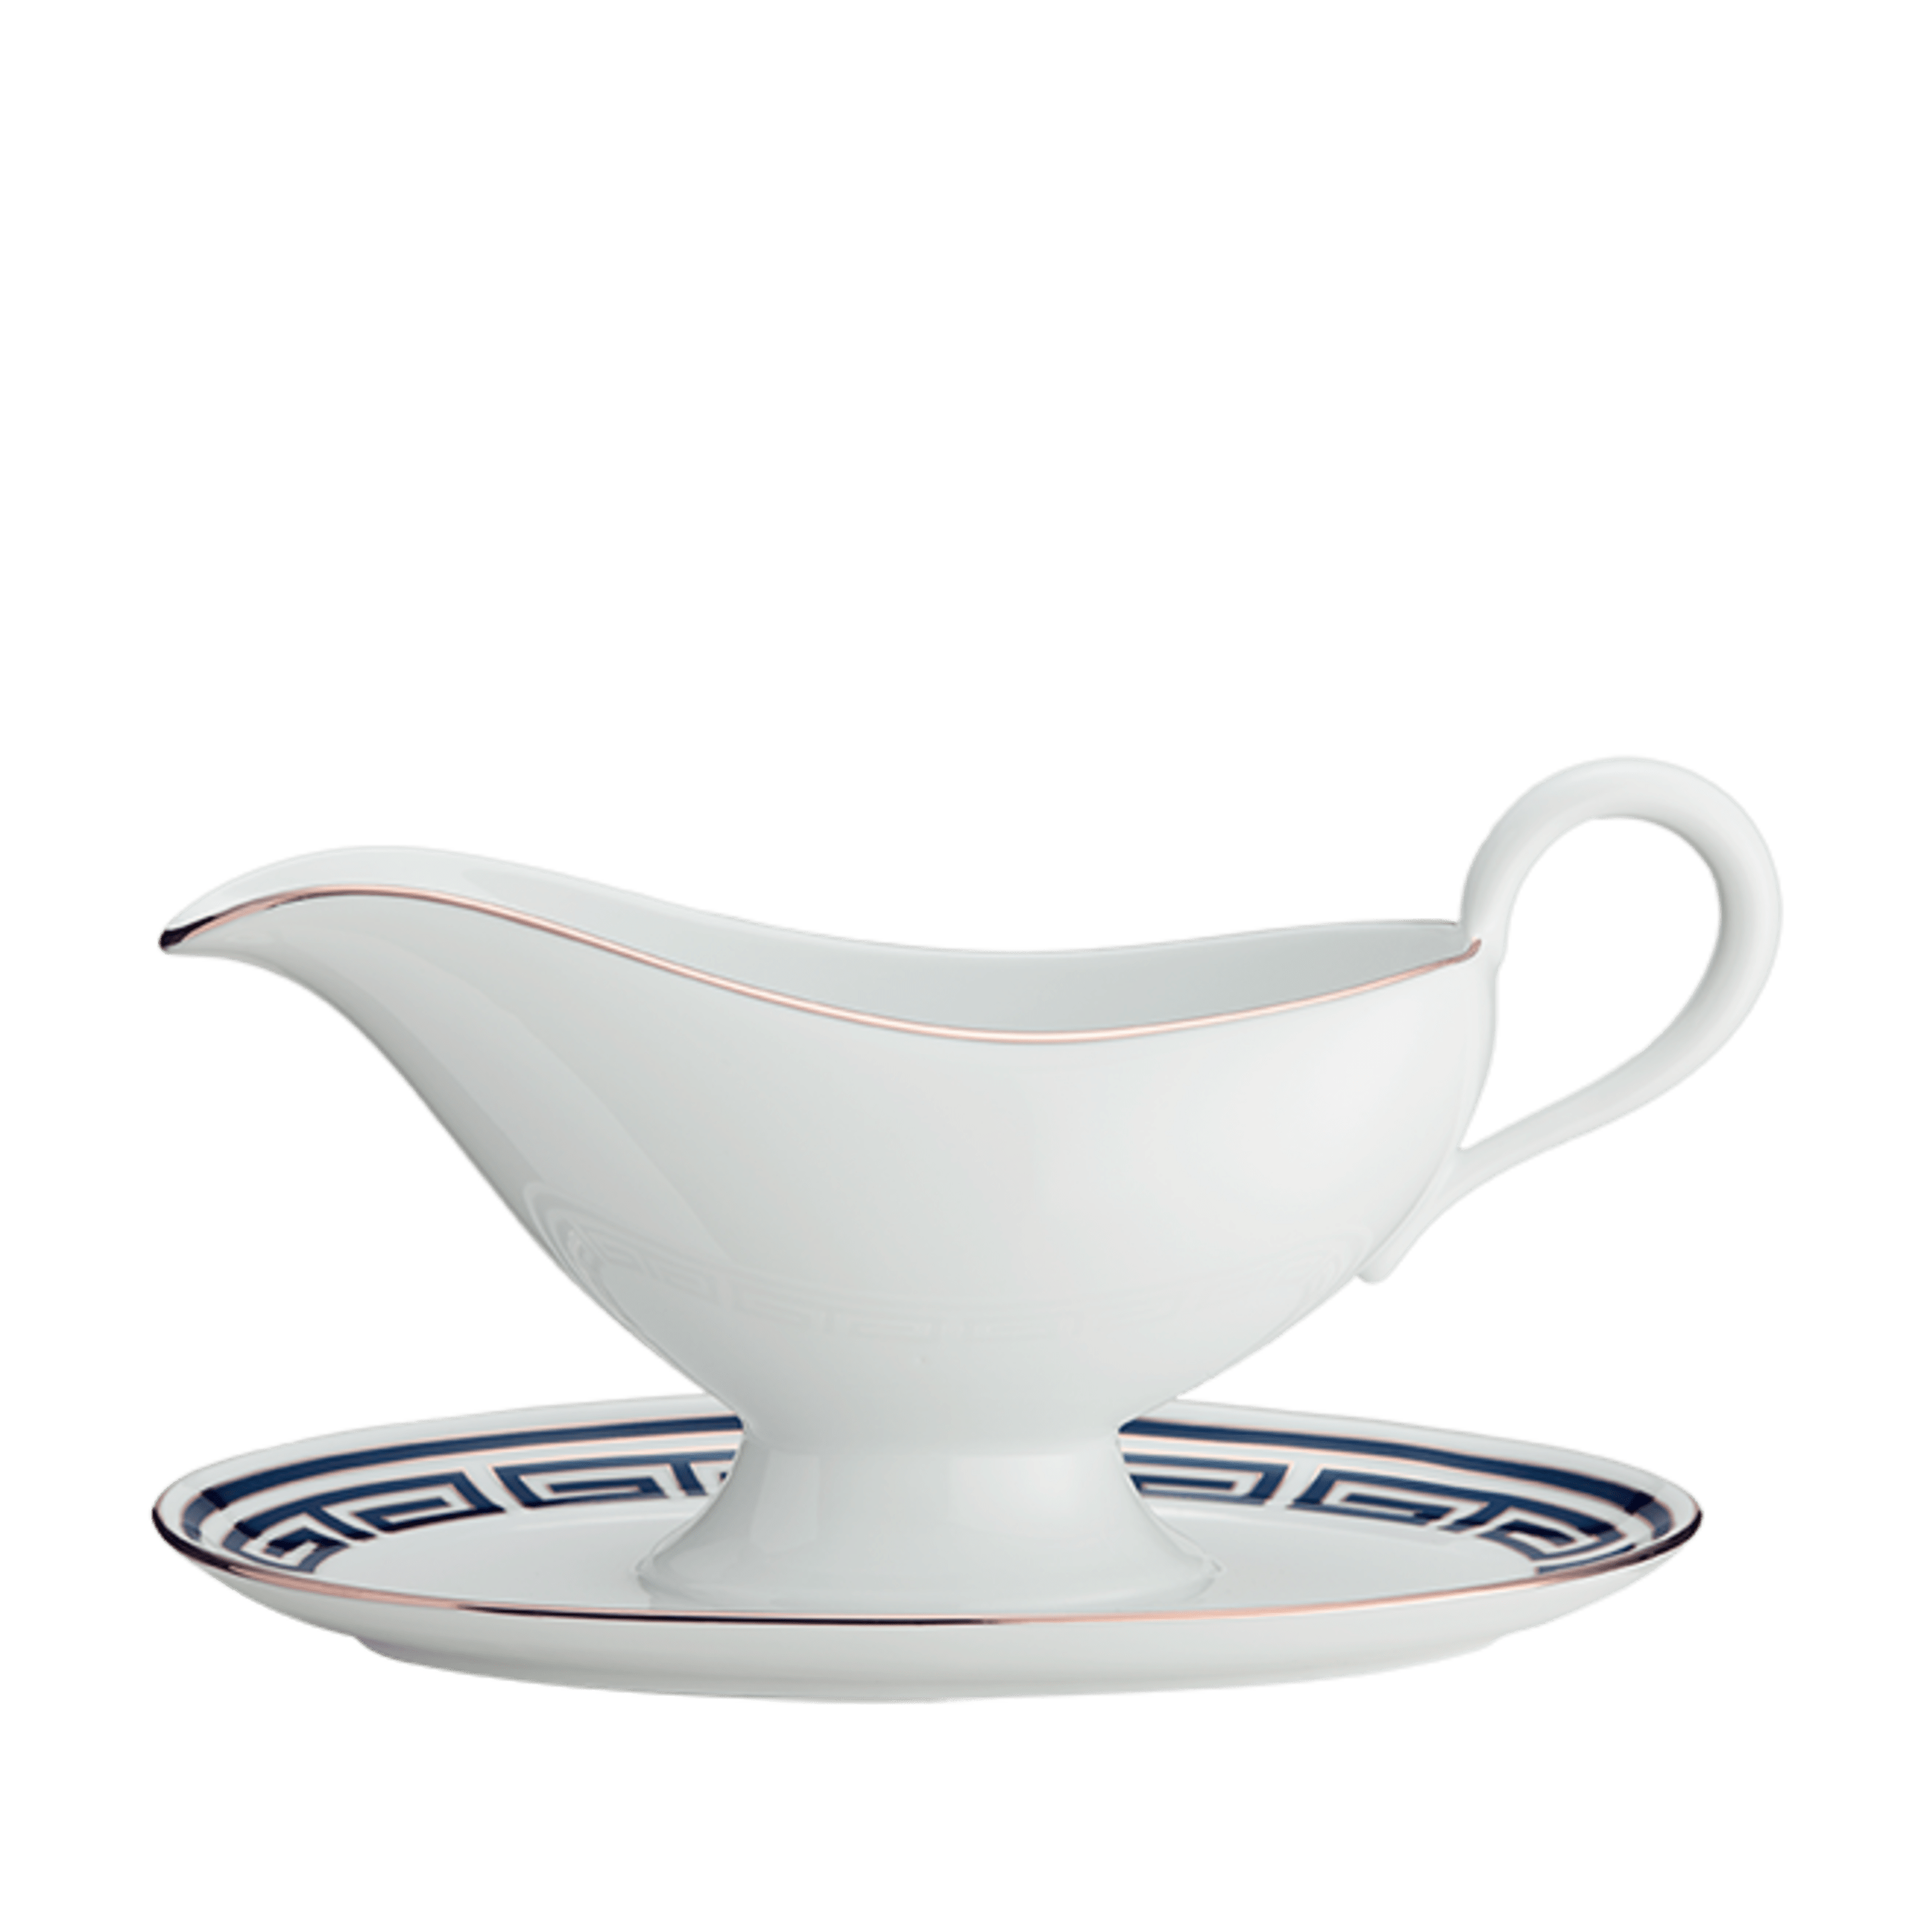 Sur La Table Porcelain Gravy Boat with Saucer, White